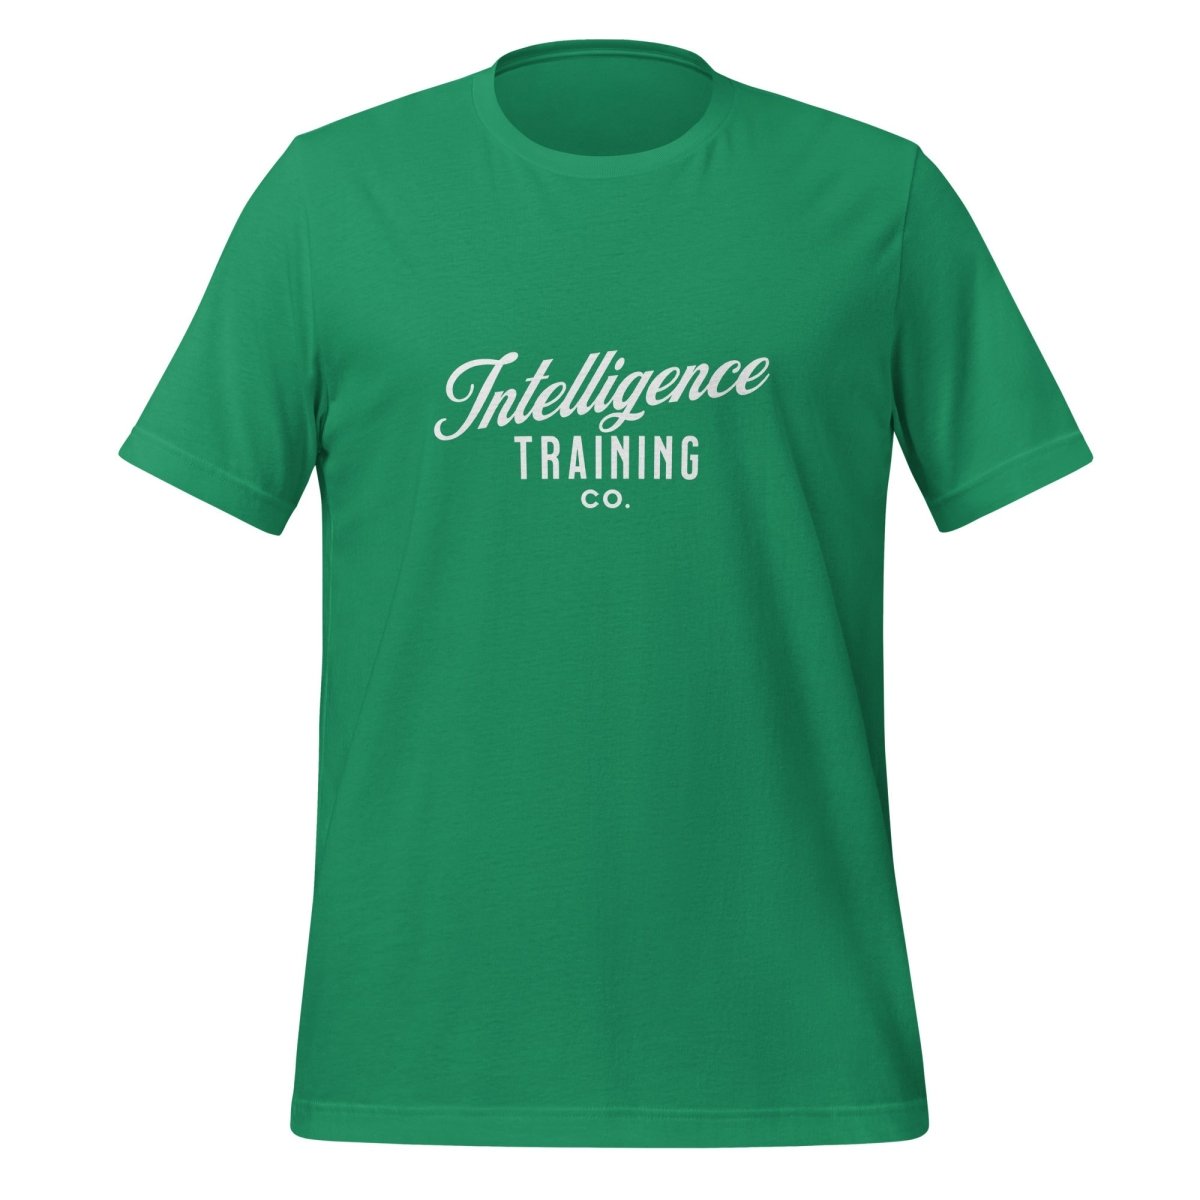 Intelligence Training Co. T - Shirt (unisex) - Kelly - AI Store